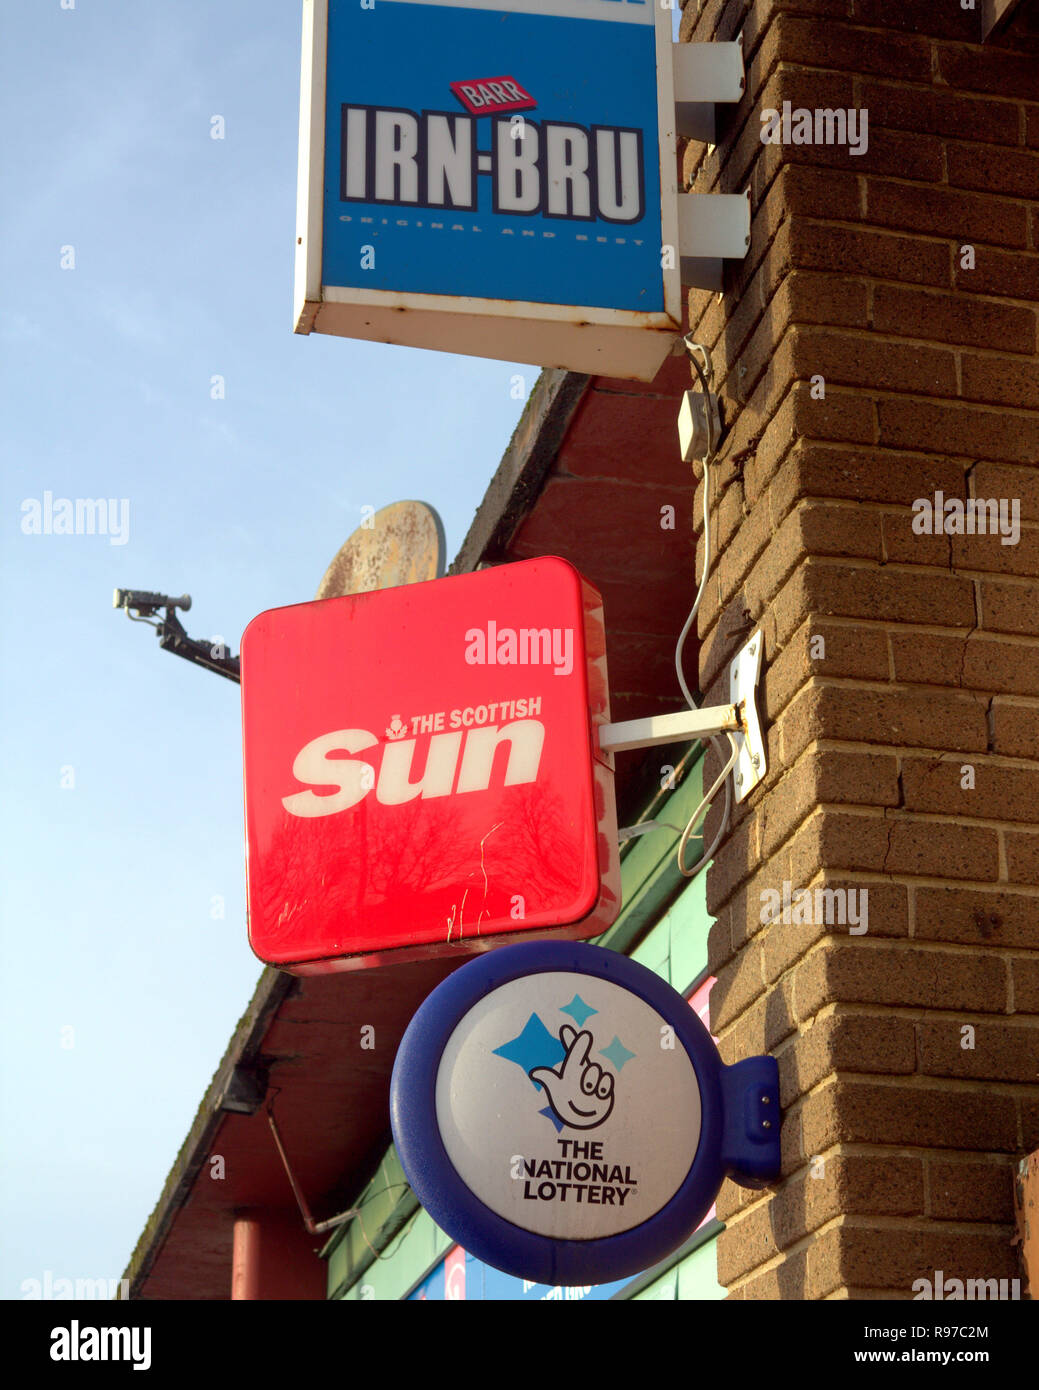 Marchand de panneau publicitaire pour irn bru IRN-BRU , le scottish sun, la loterie nationale, pour un magasin appelé news et booze ciel bleu Banque D'Images